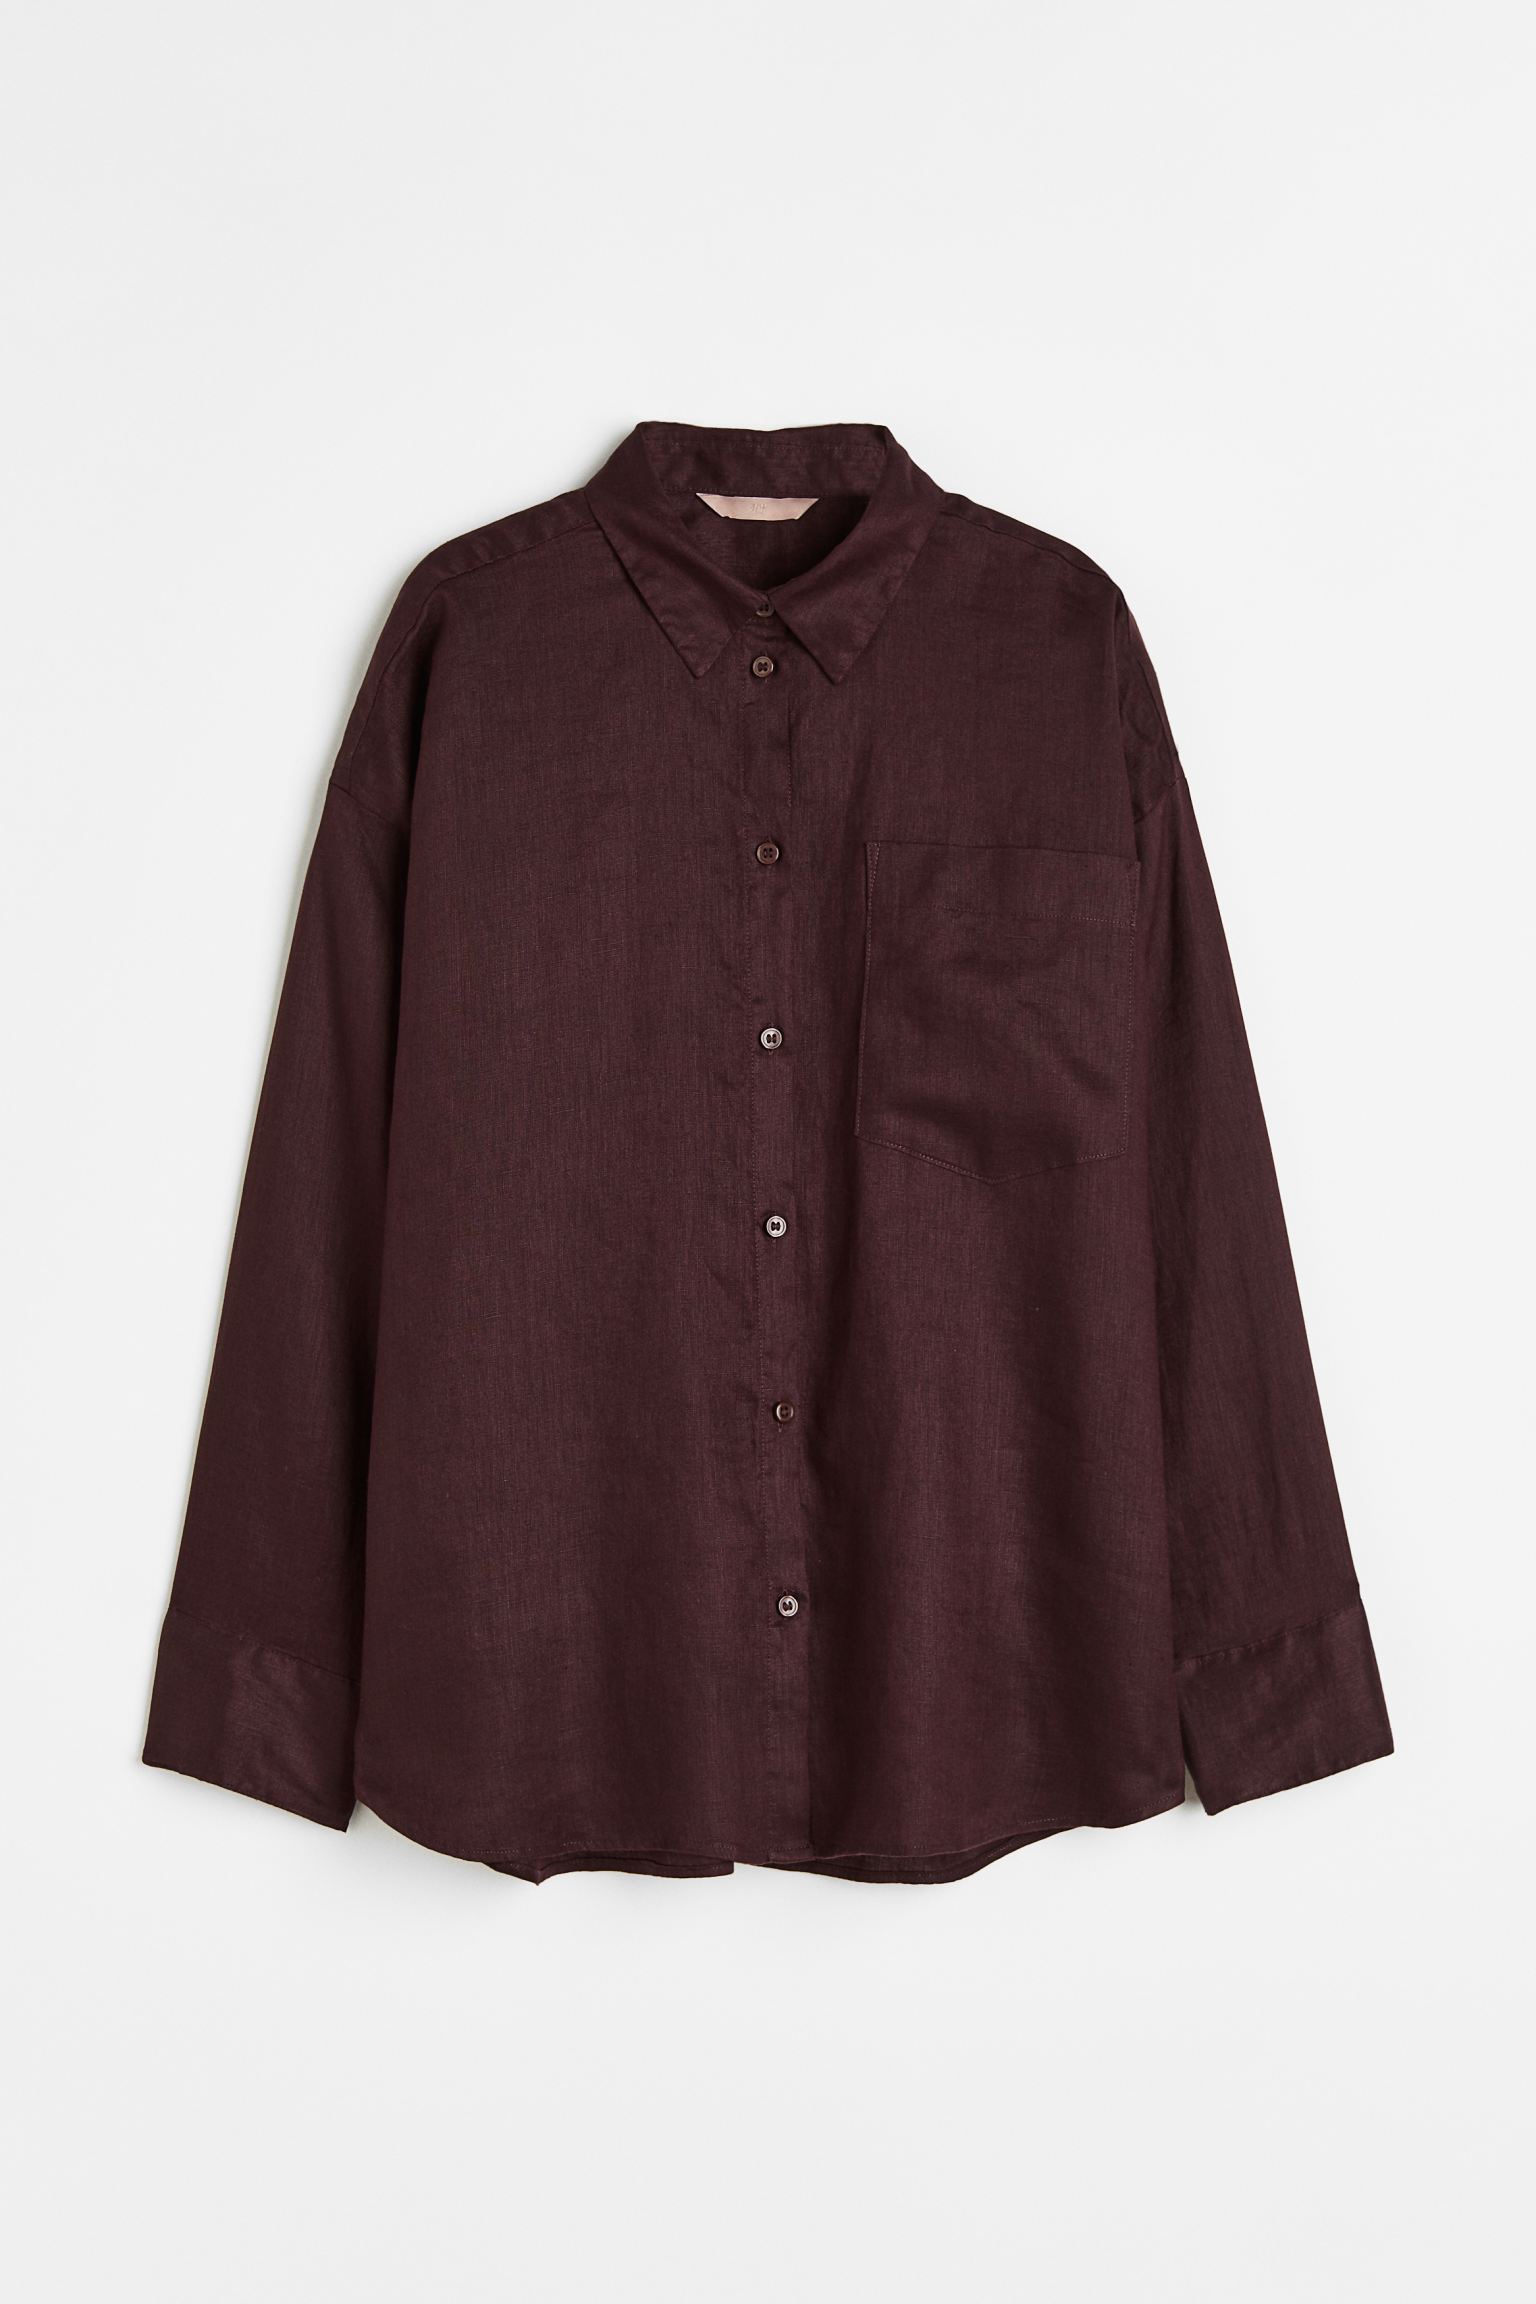 Рубашка женская H&M 1073662006 коричневая M (доставка из-за рубежа)